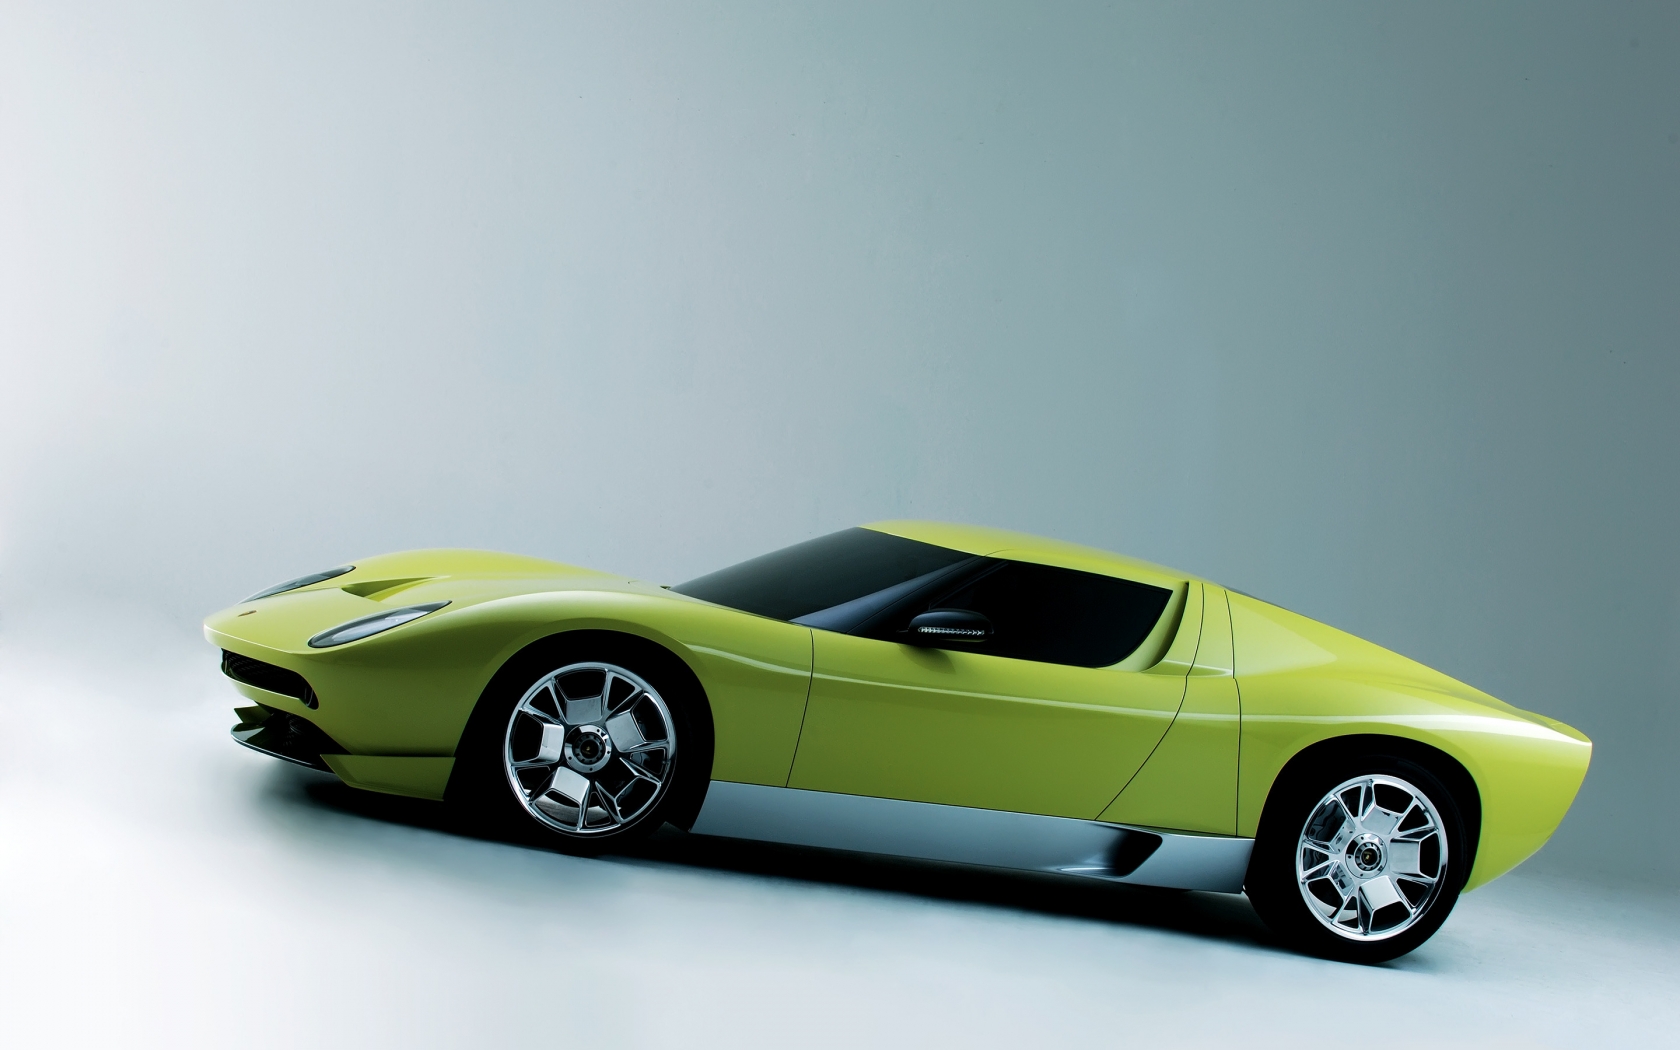 Lamborghini Miura Concept Side for 1680 x 1050 widescreen resolution